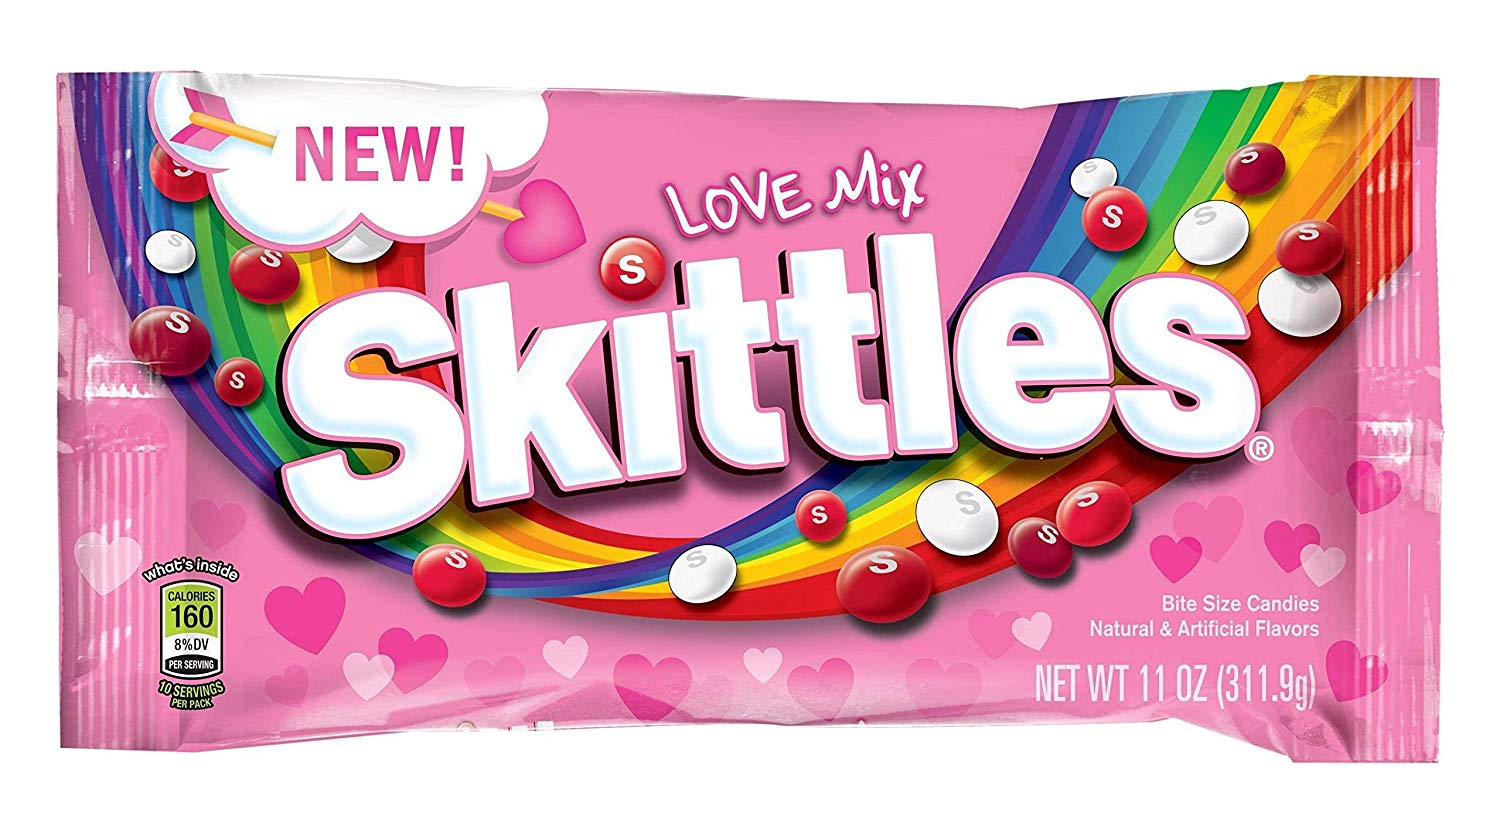 Skittle's Love Mix